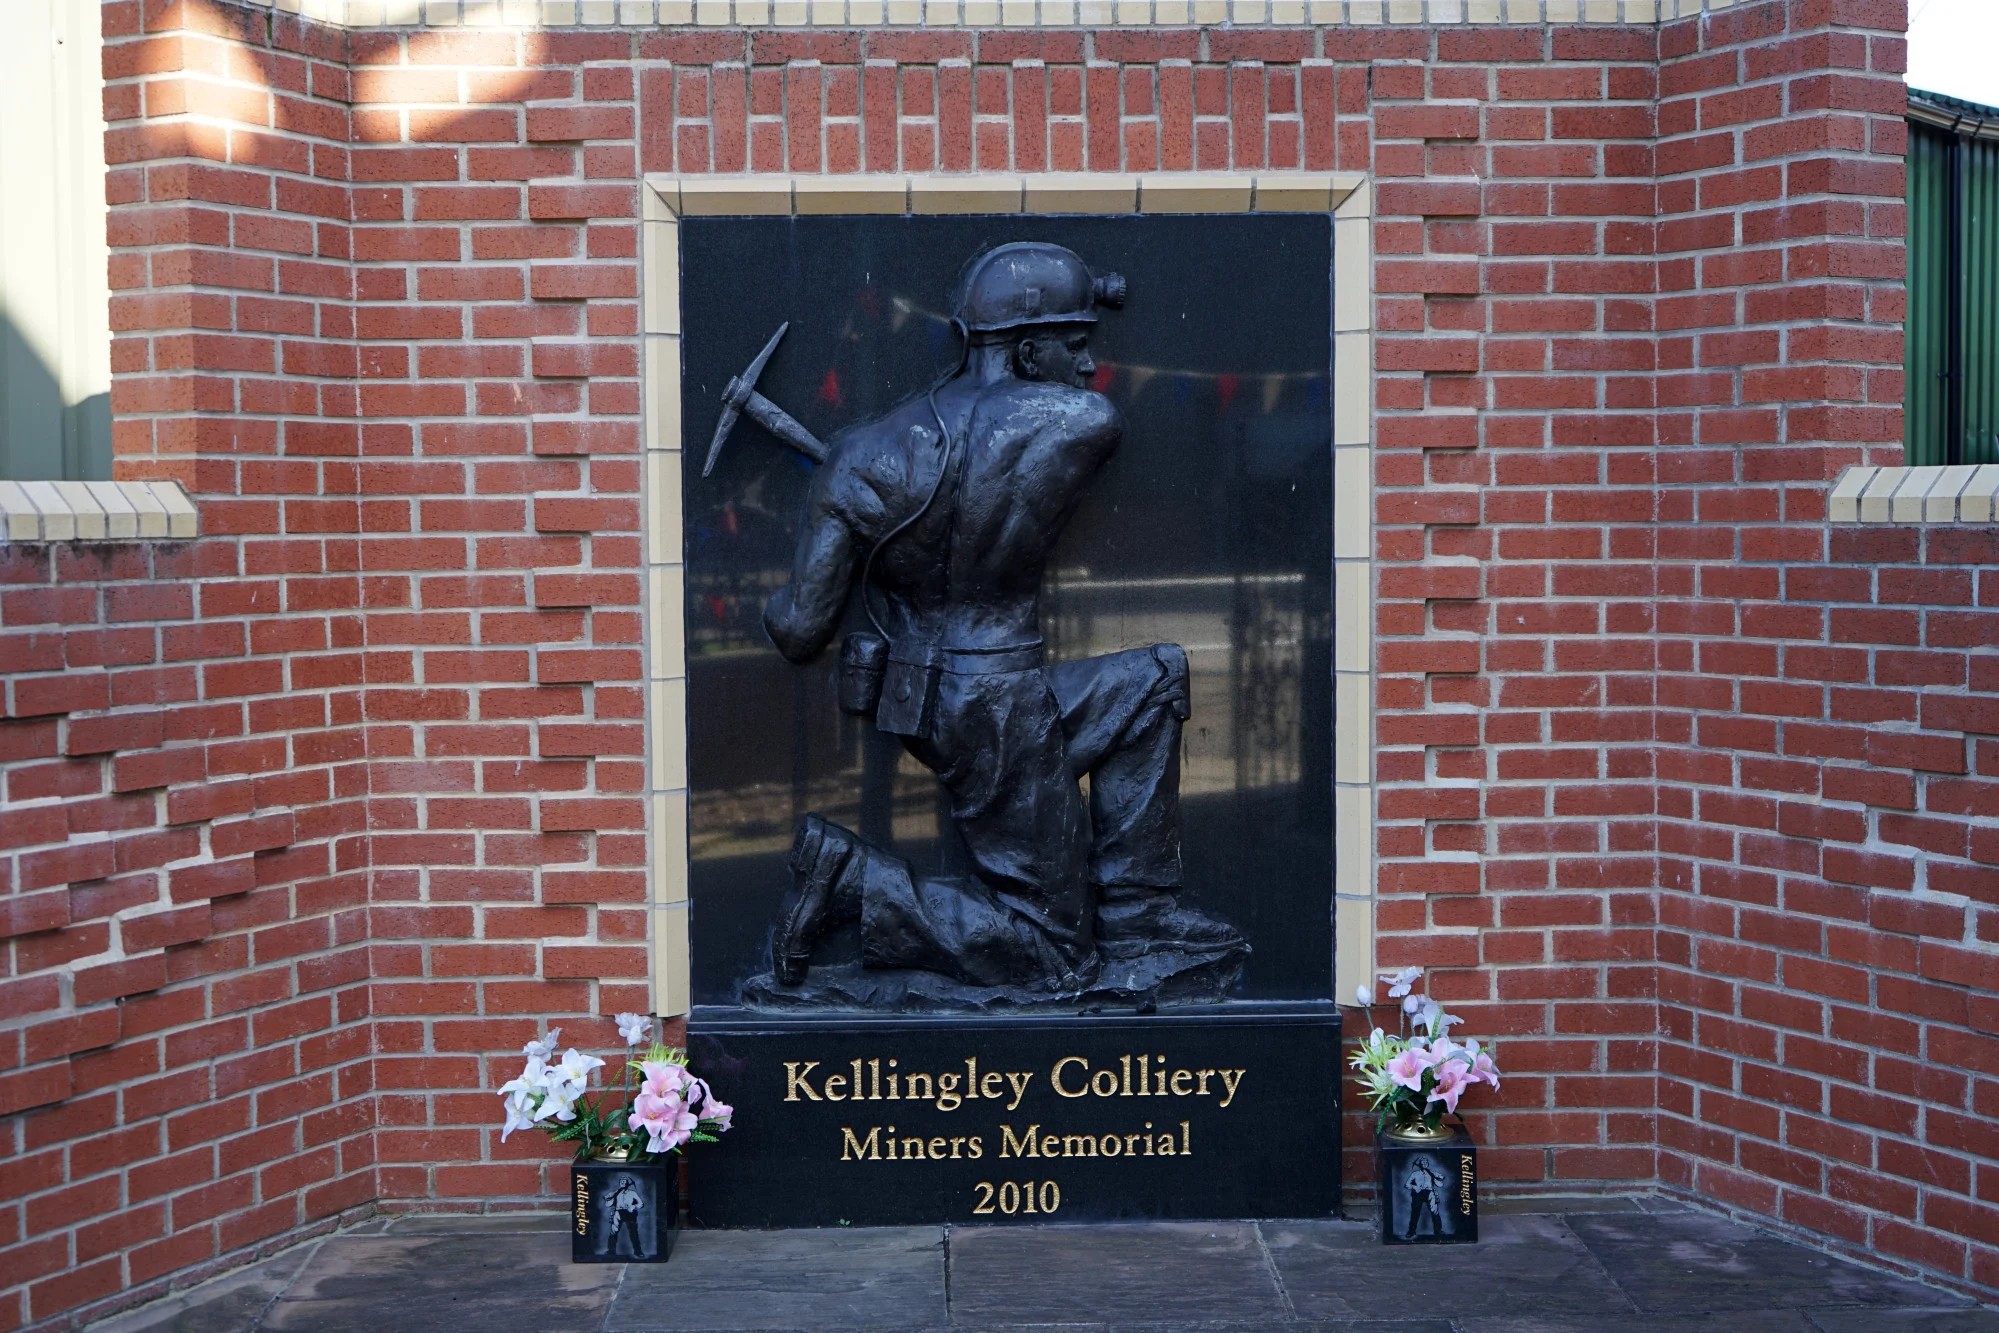 Đài tưởng niệm thợ mỏ Kellingley Colliery tại Bảo tàng khai thác than quốc gia của Anh, ở Tây Yorkshire, Anh. Ảnh: Shutterstock